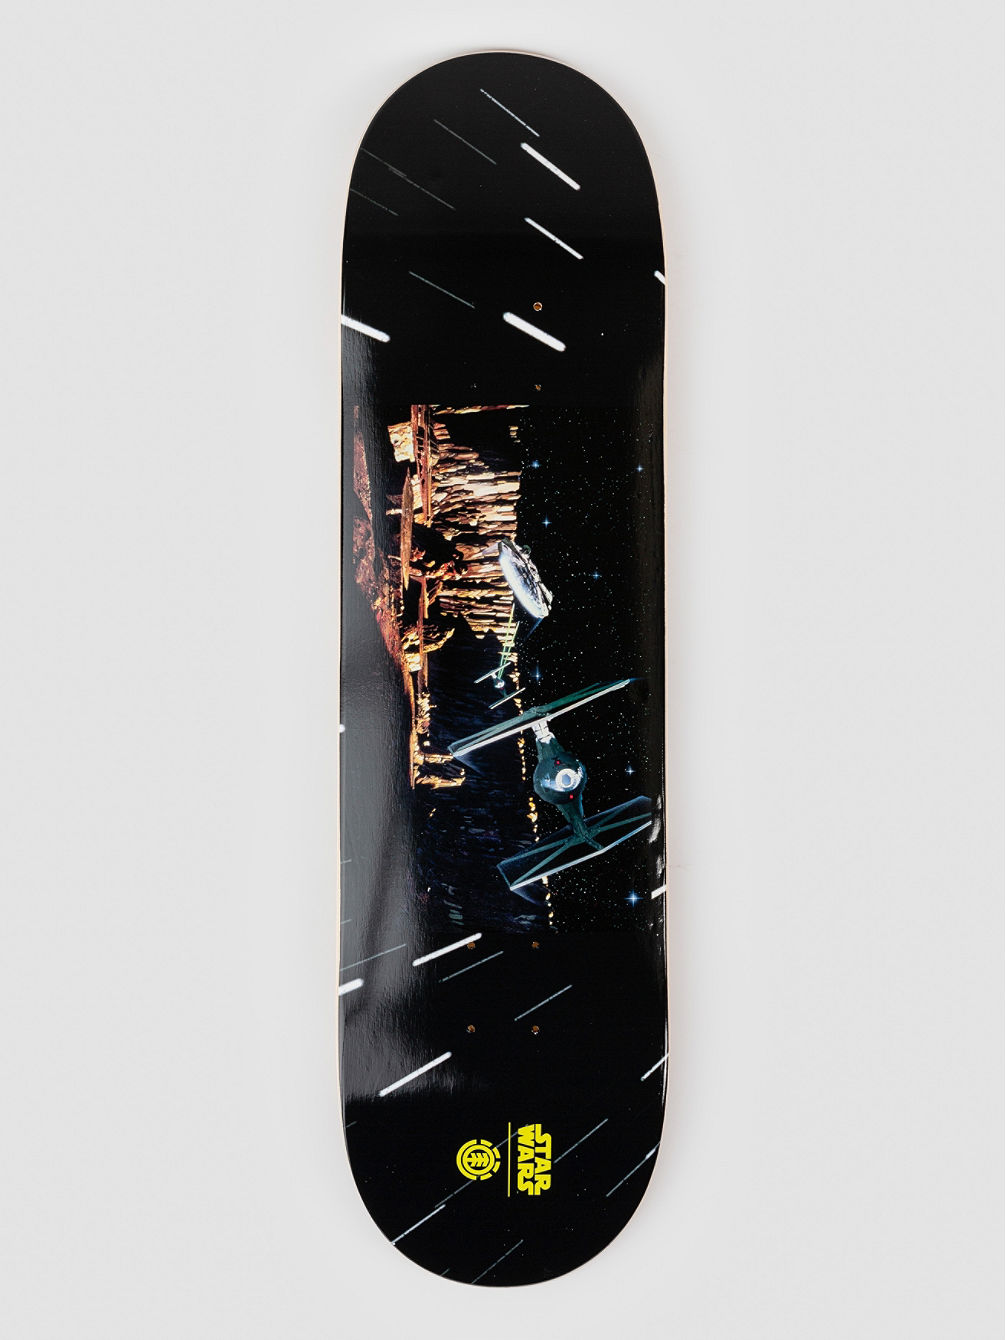 X Star Wars Tie Fighter 8.5&amp;#034; Skateboard deck